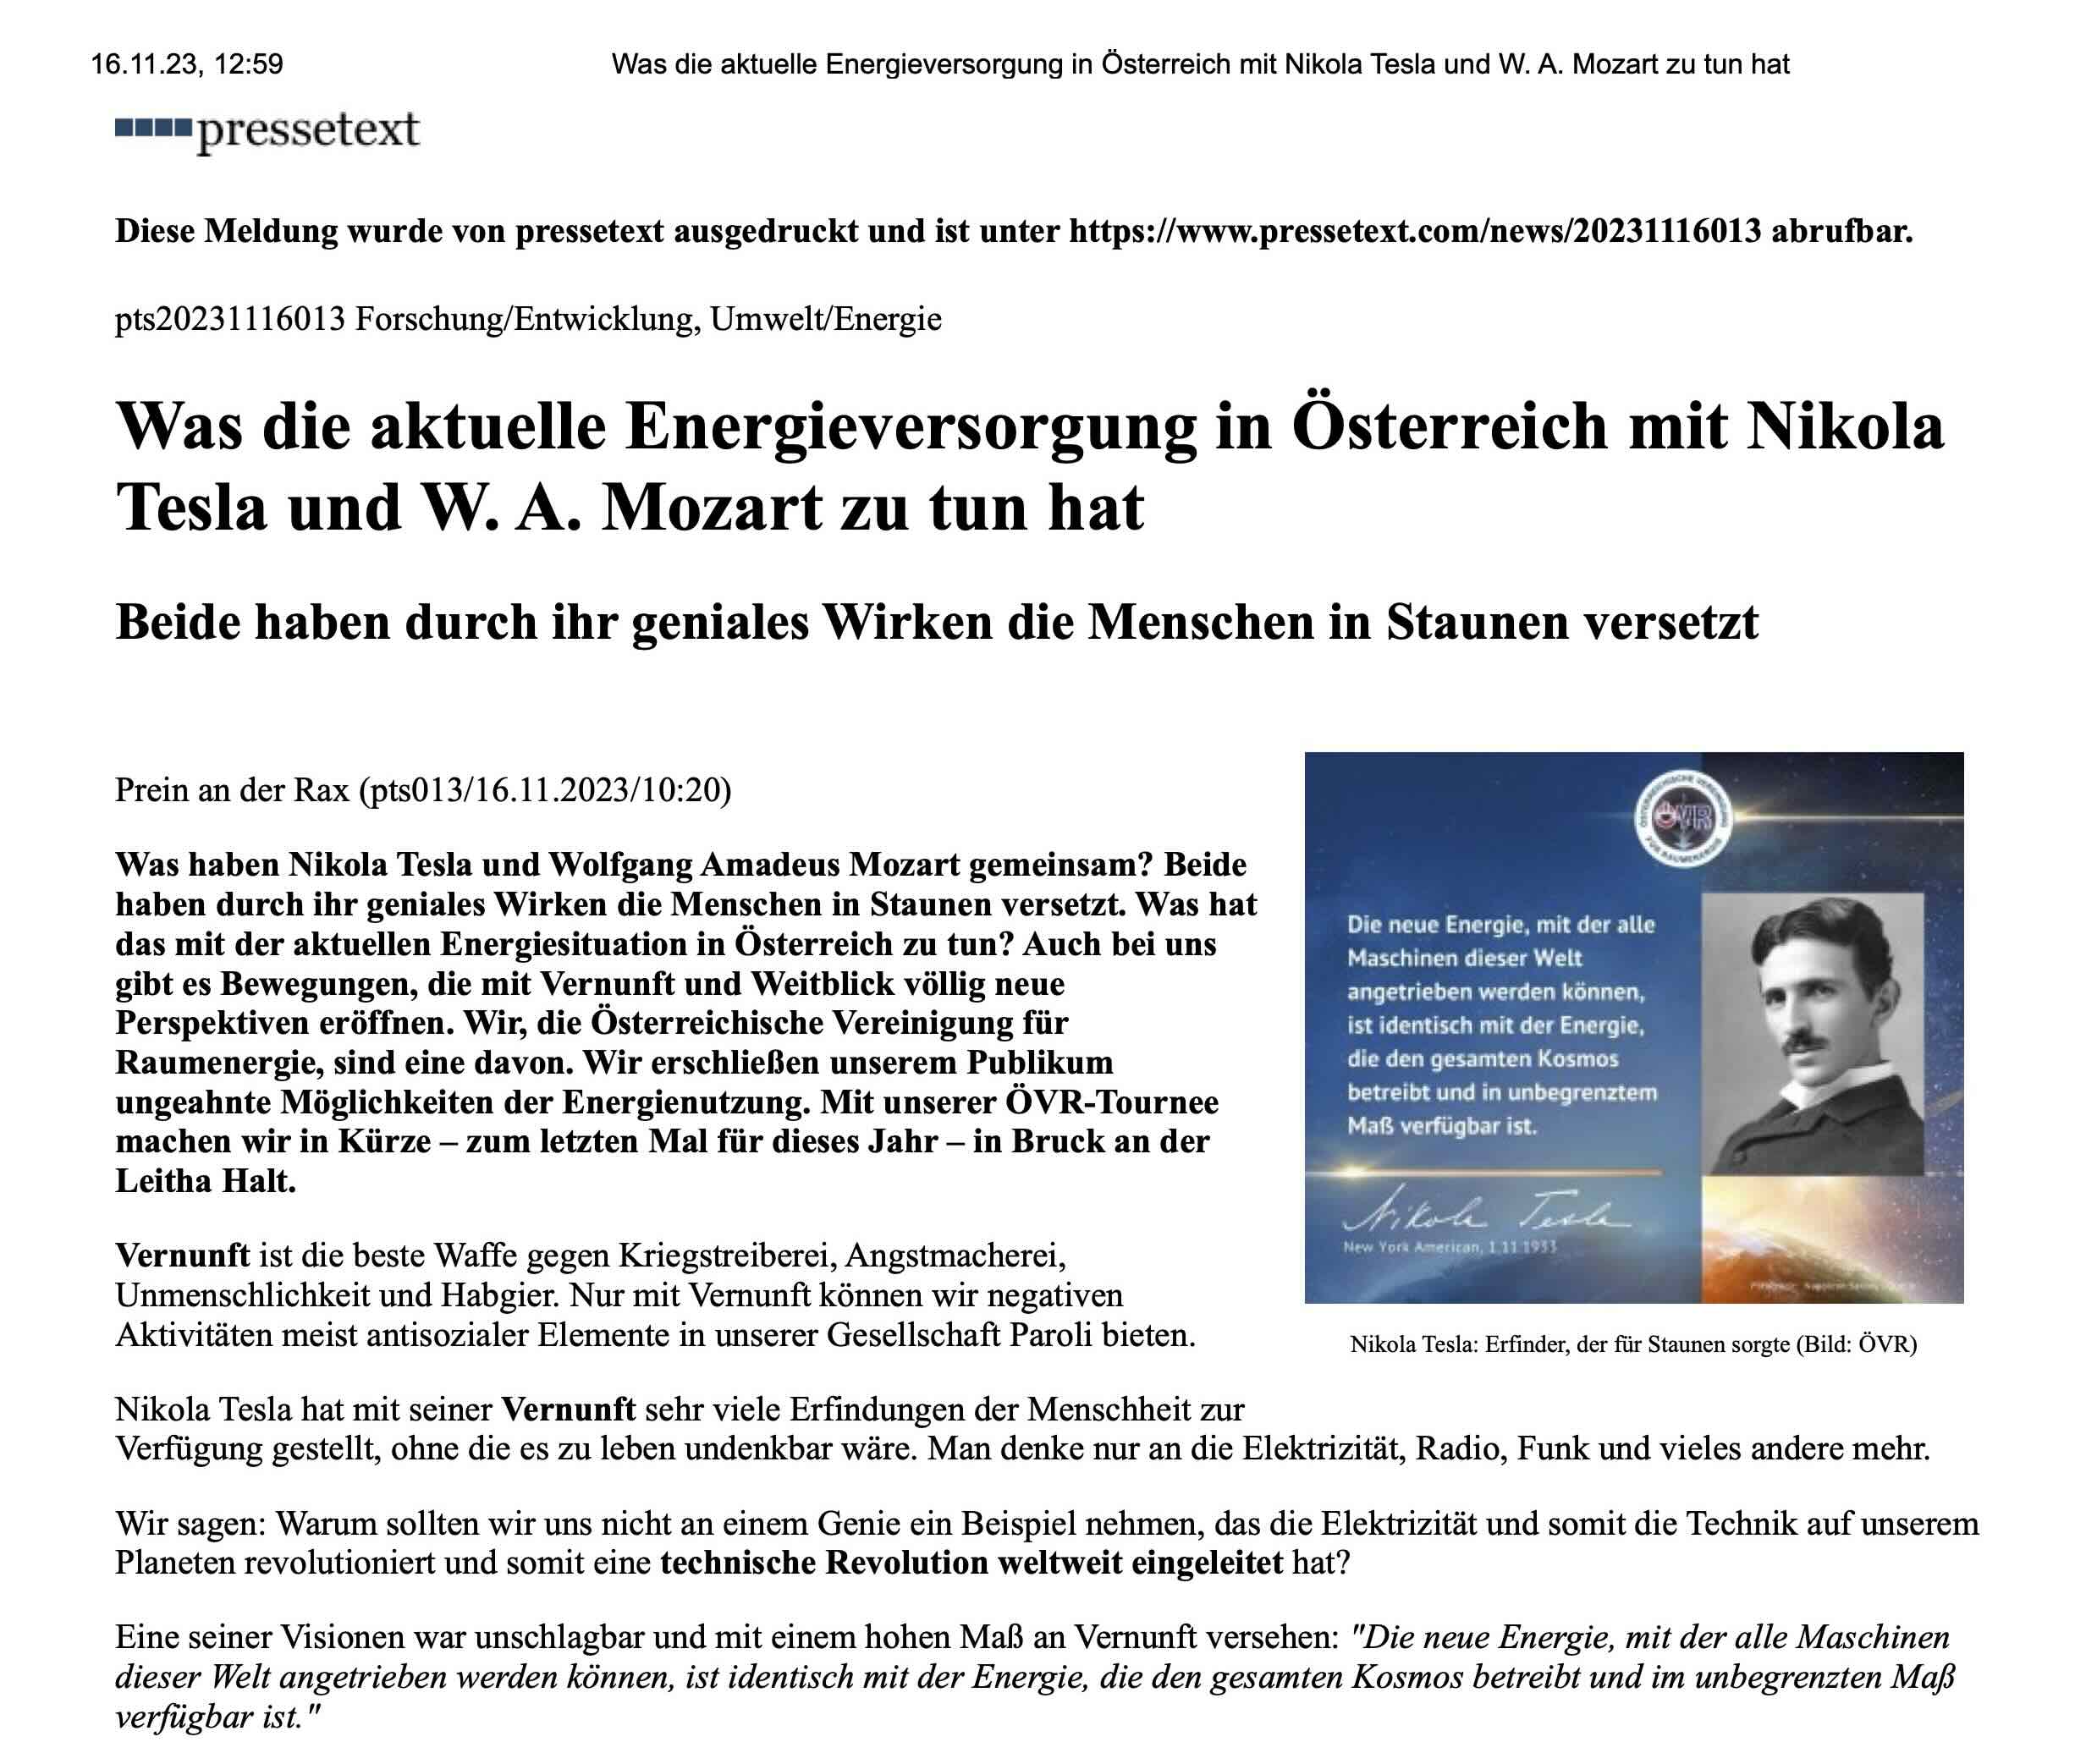 Was die aktuelle Energieversorgung in Österreich mit Nikola Tesla und W. A. Mozart zu tun hat